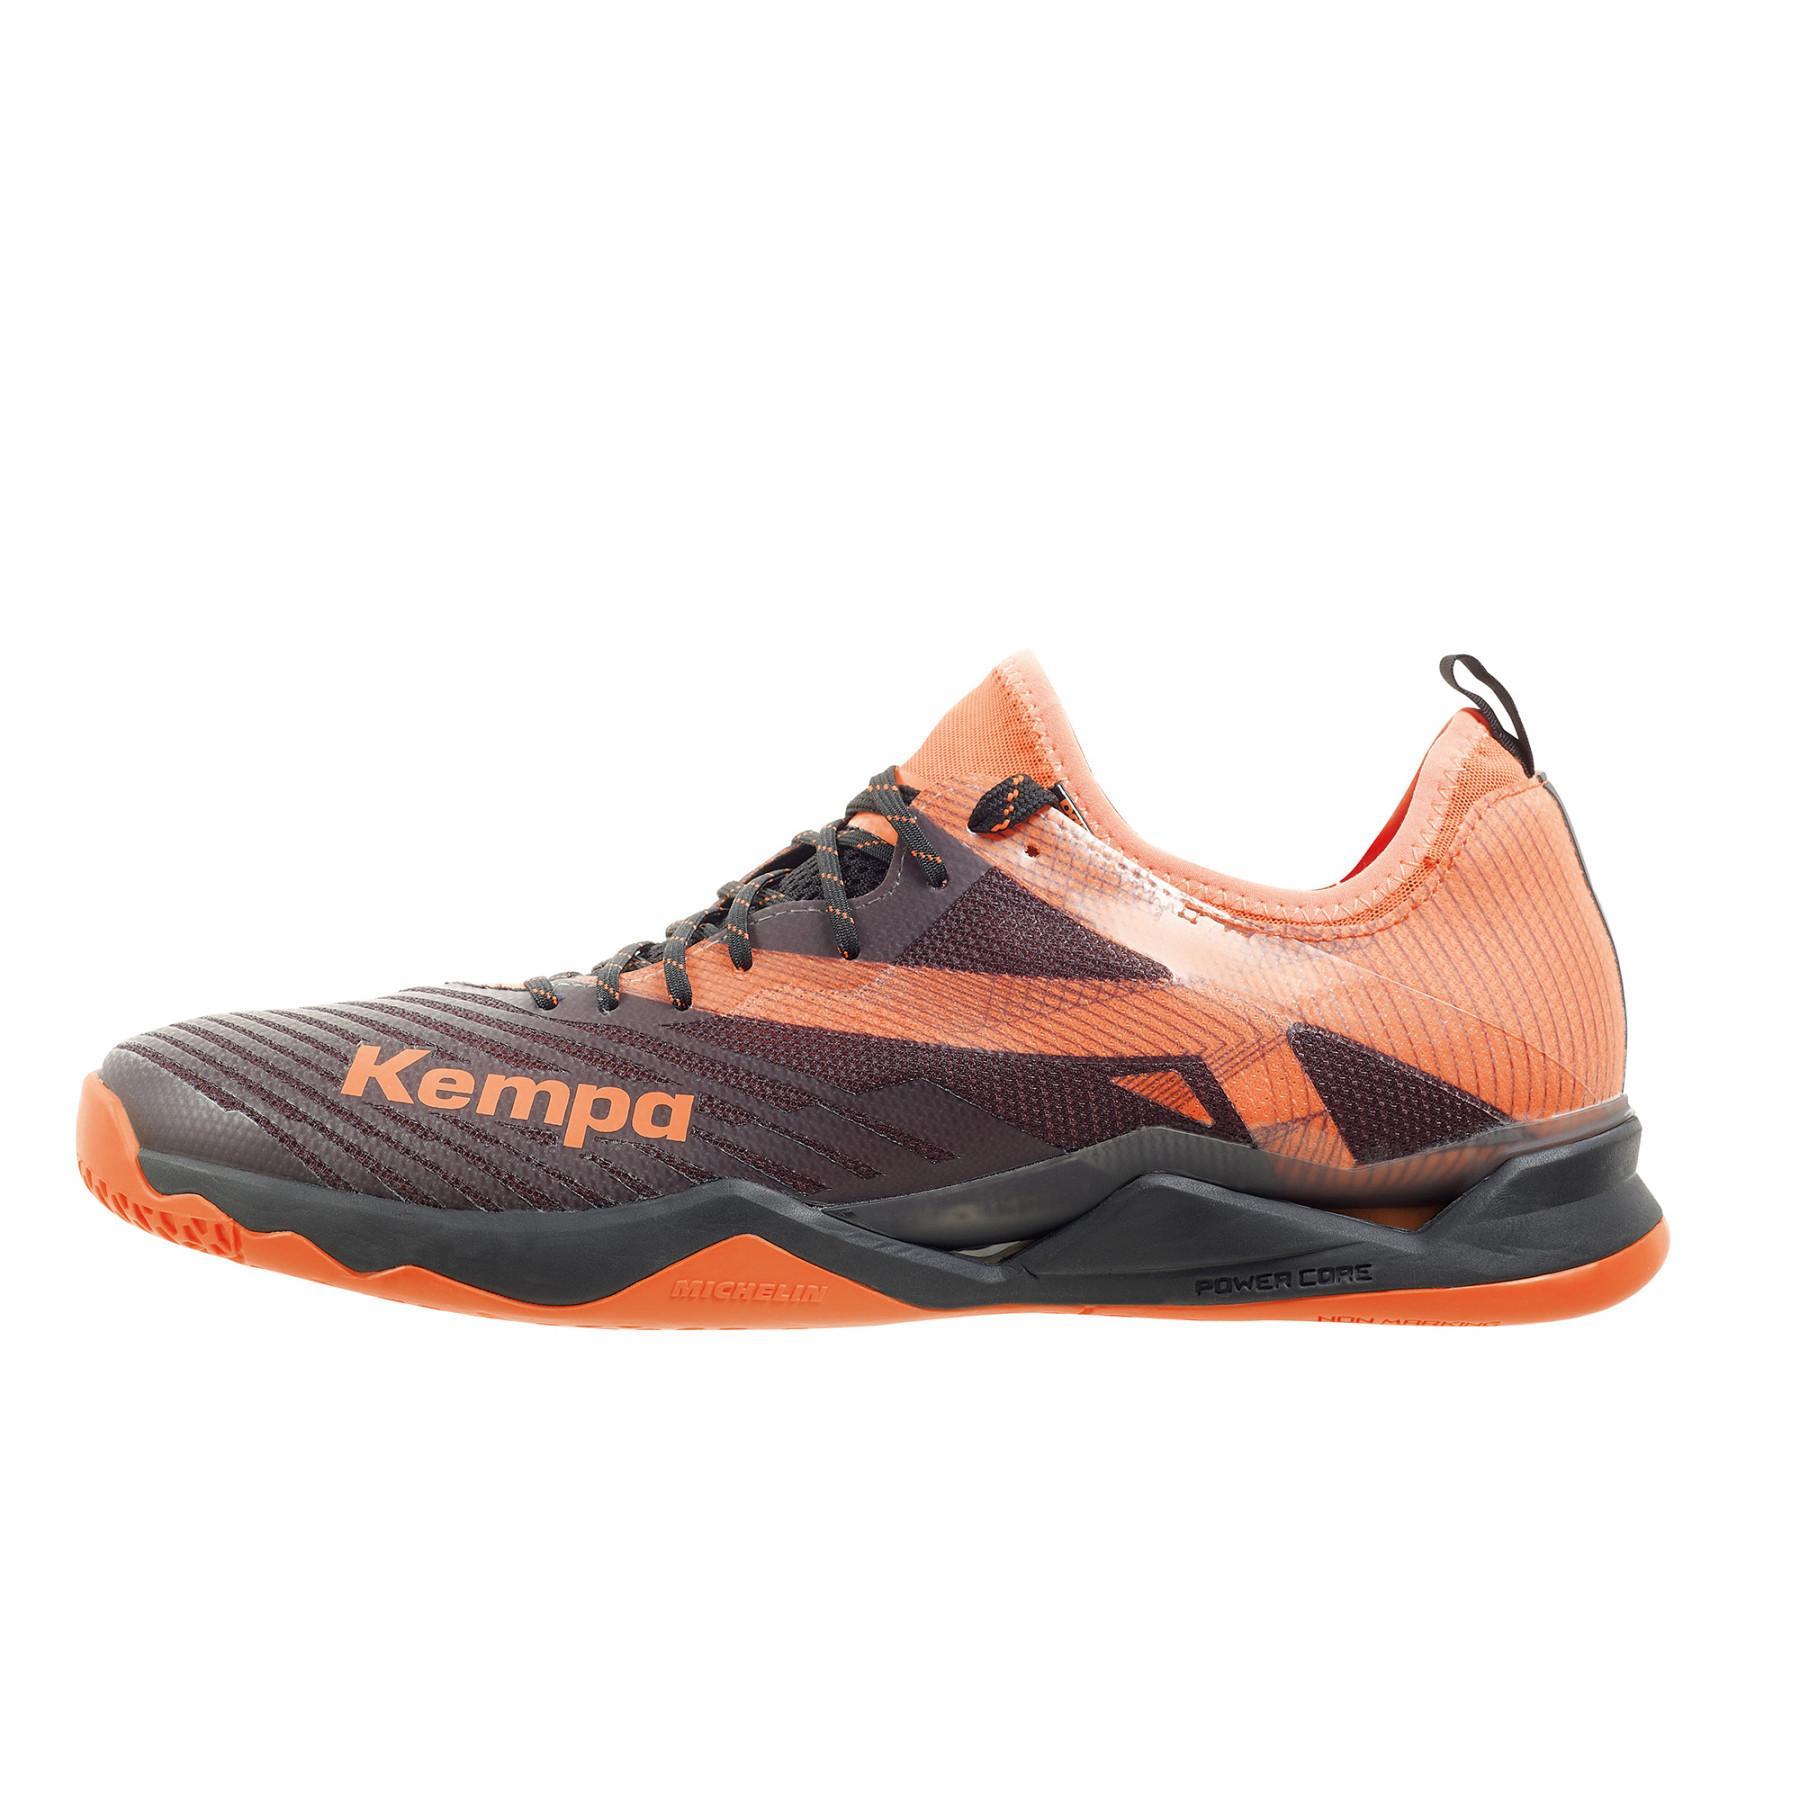 Schuhe Kempa Wing Lite 2.0